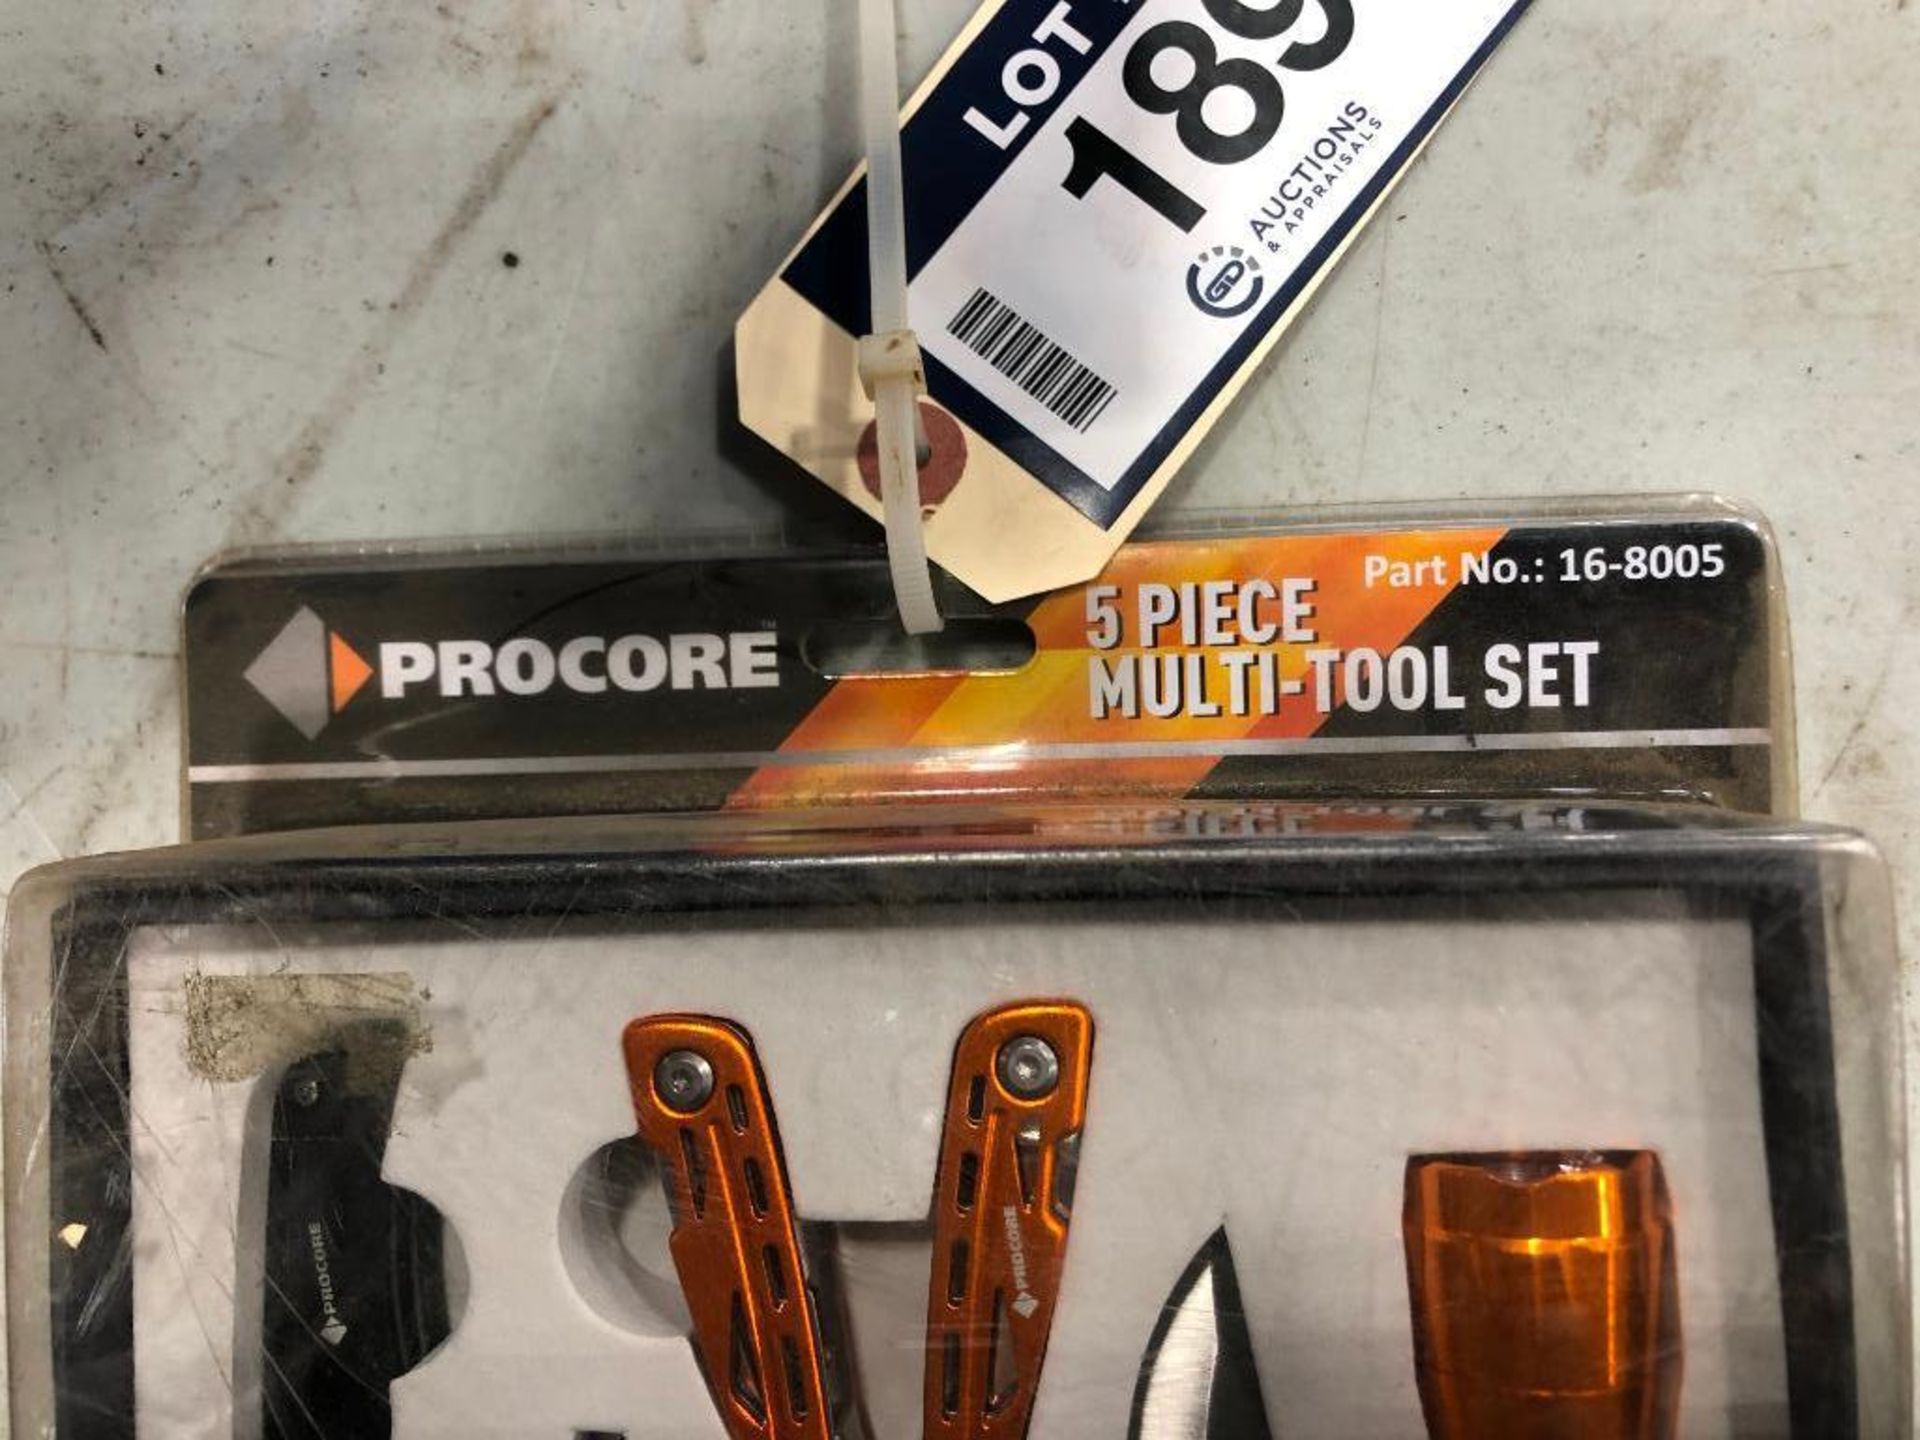 Procore 5 Piece Multi-Tool Set - Image 2 of 2